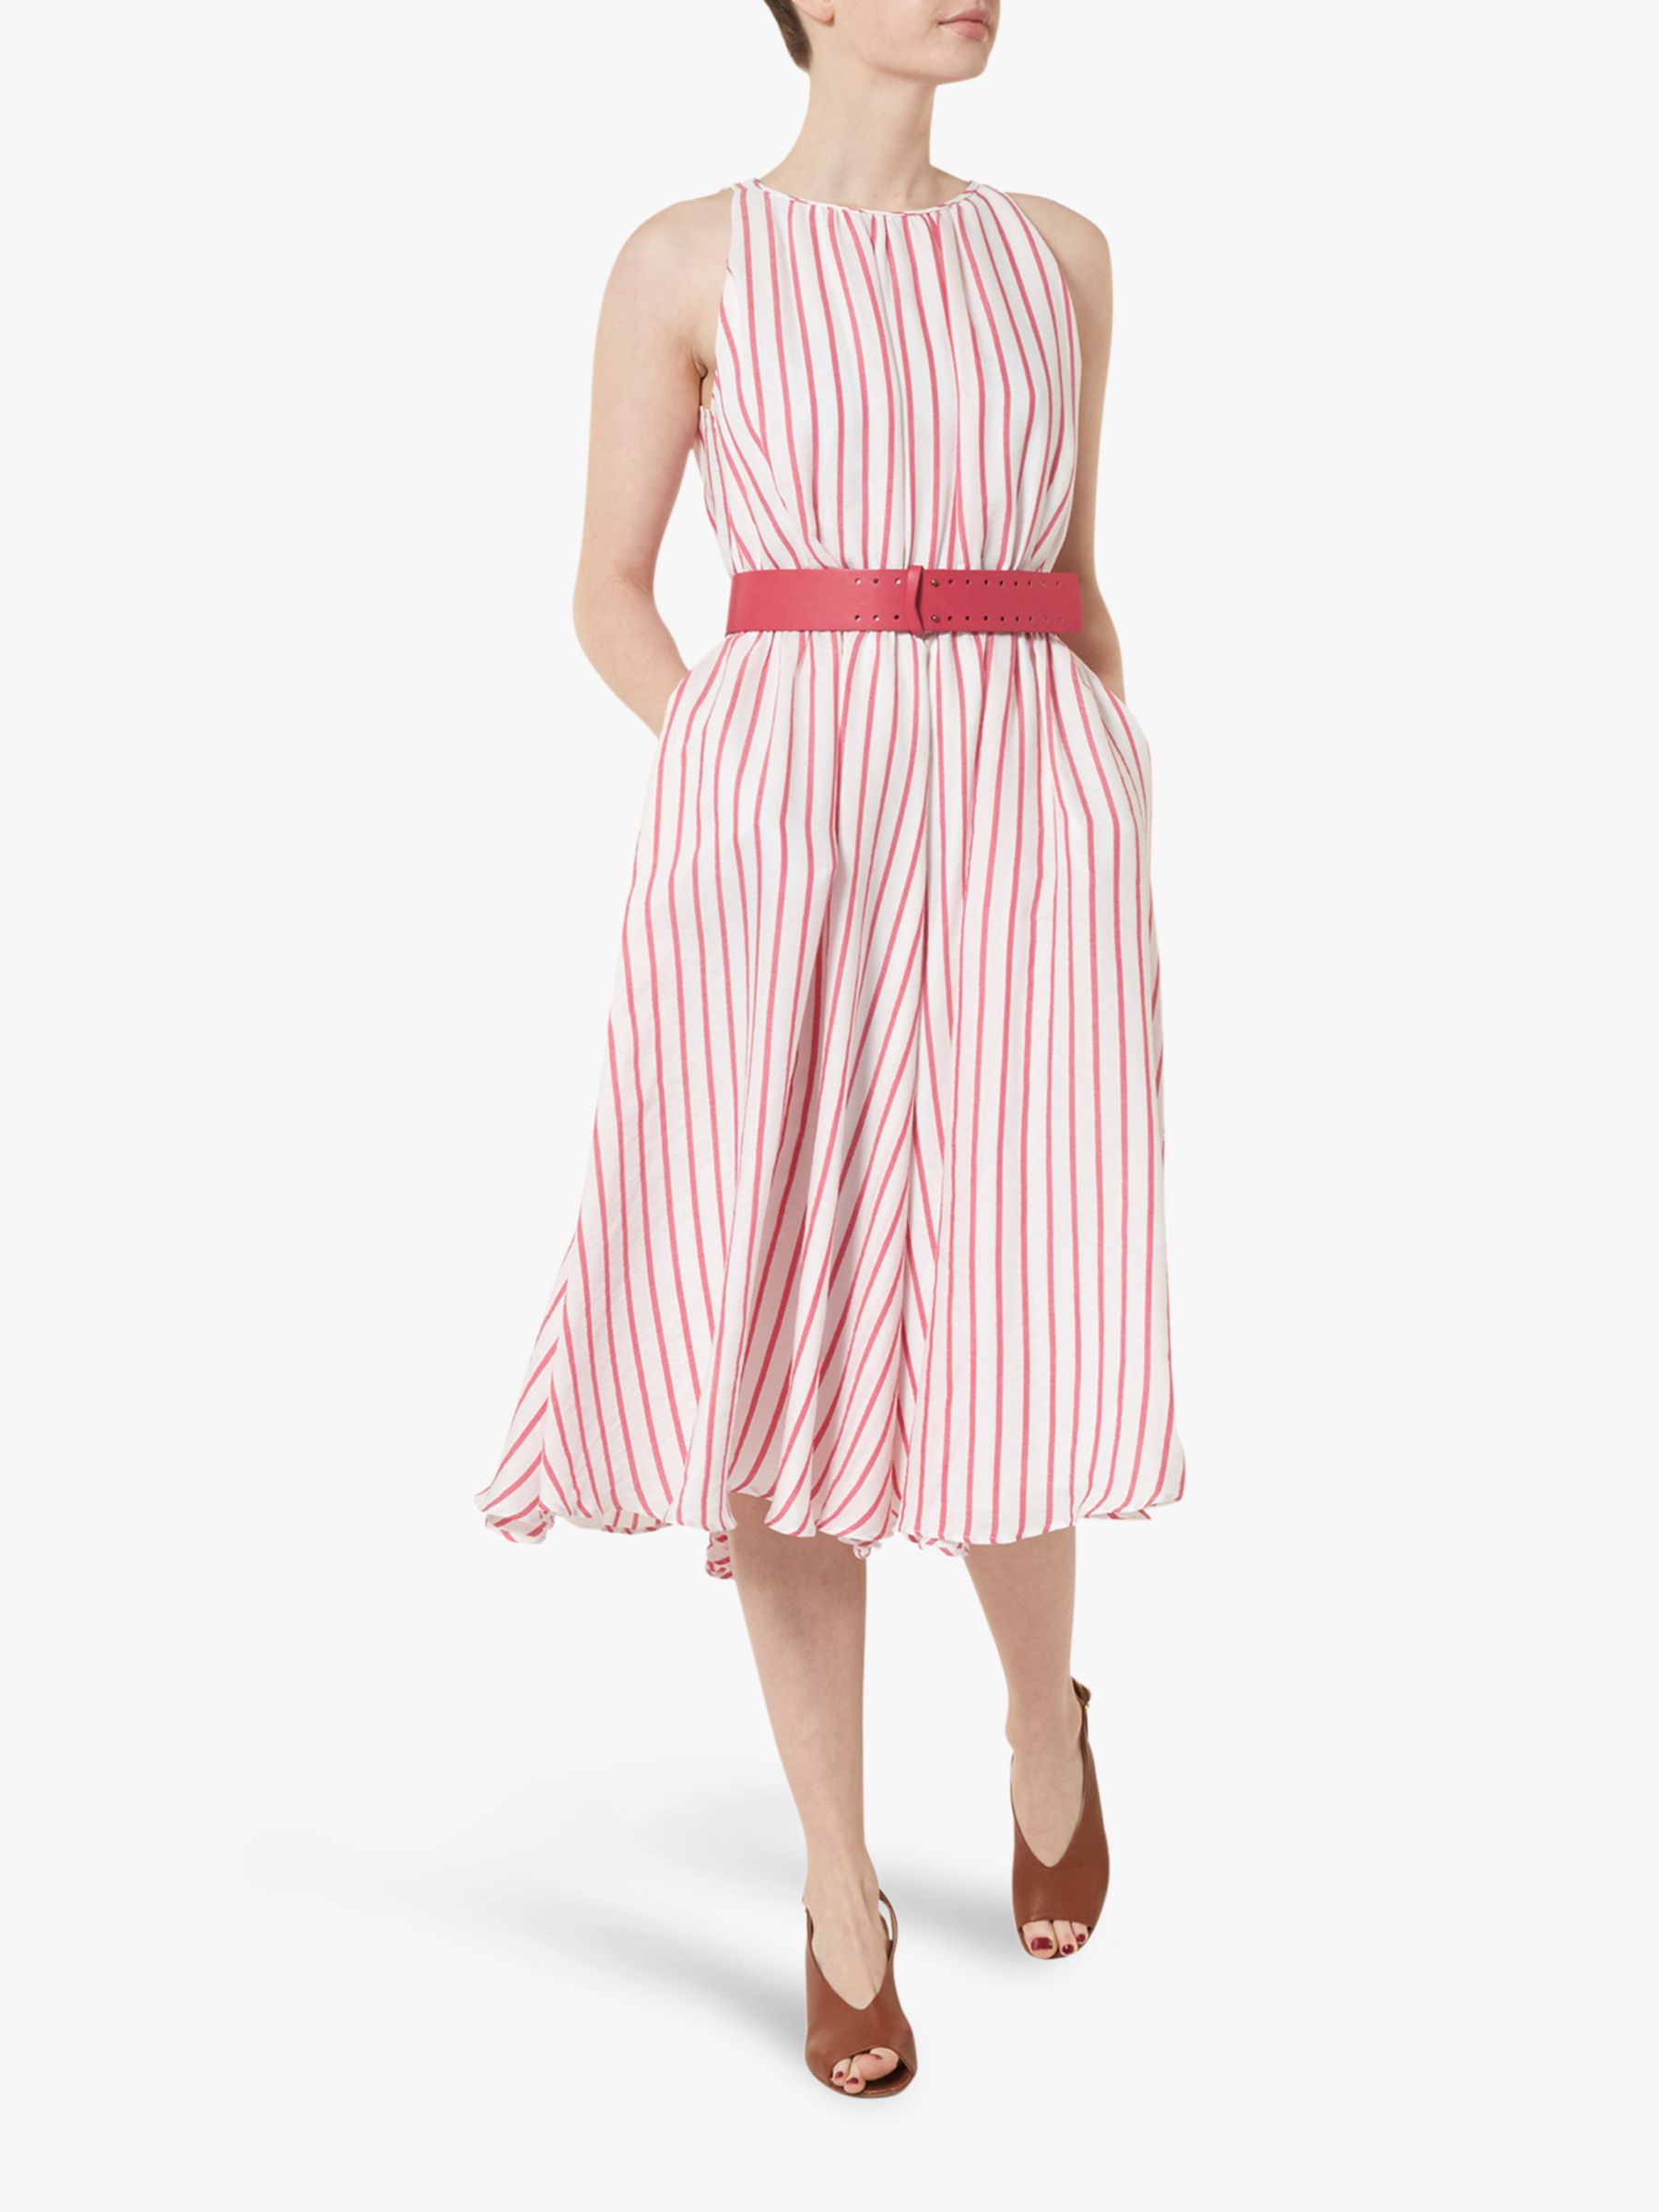 Helen McAlinden Ava Stripe Dress, Pink